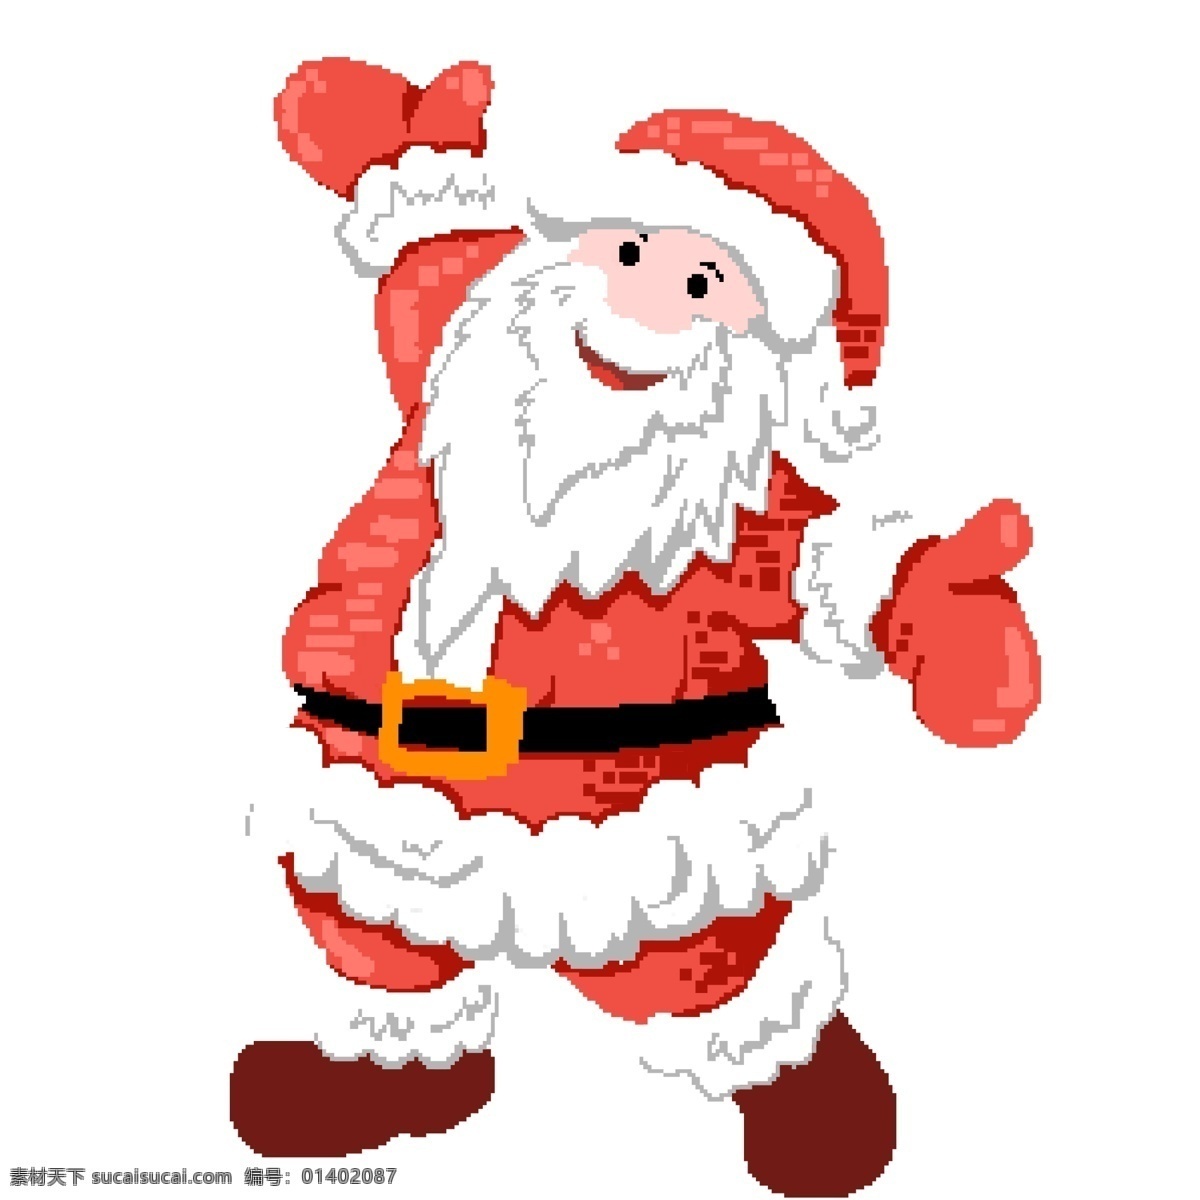 开怀大笑 圣诞老人 像素 化 商用 元素 卡通 可爱 圣诞节 节日元素 像素化